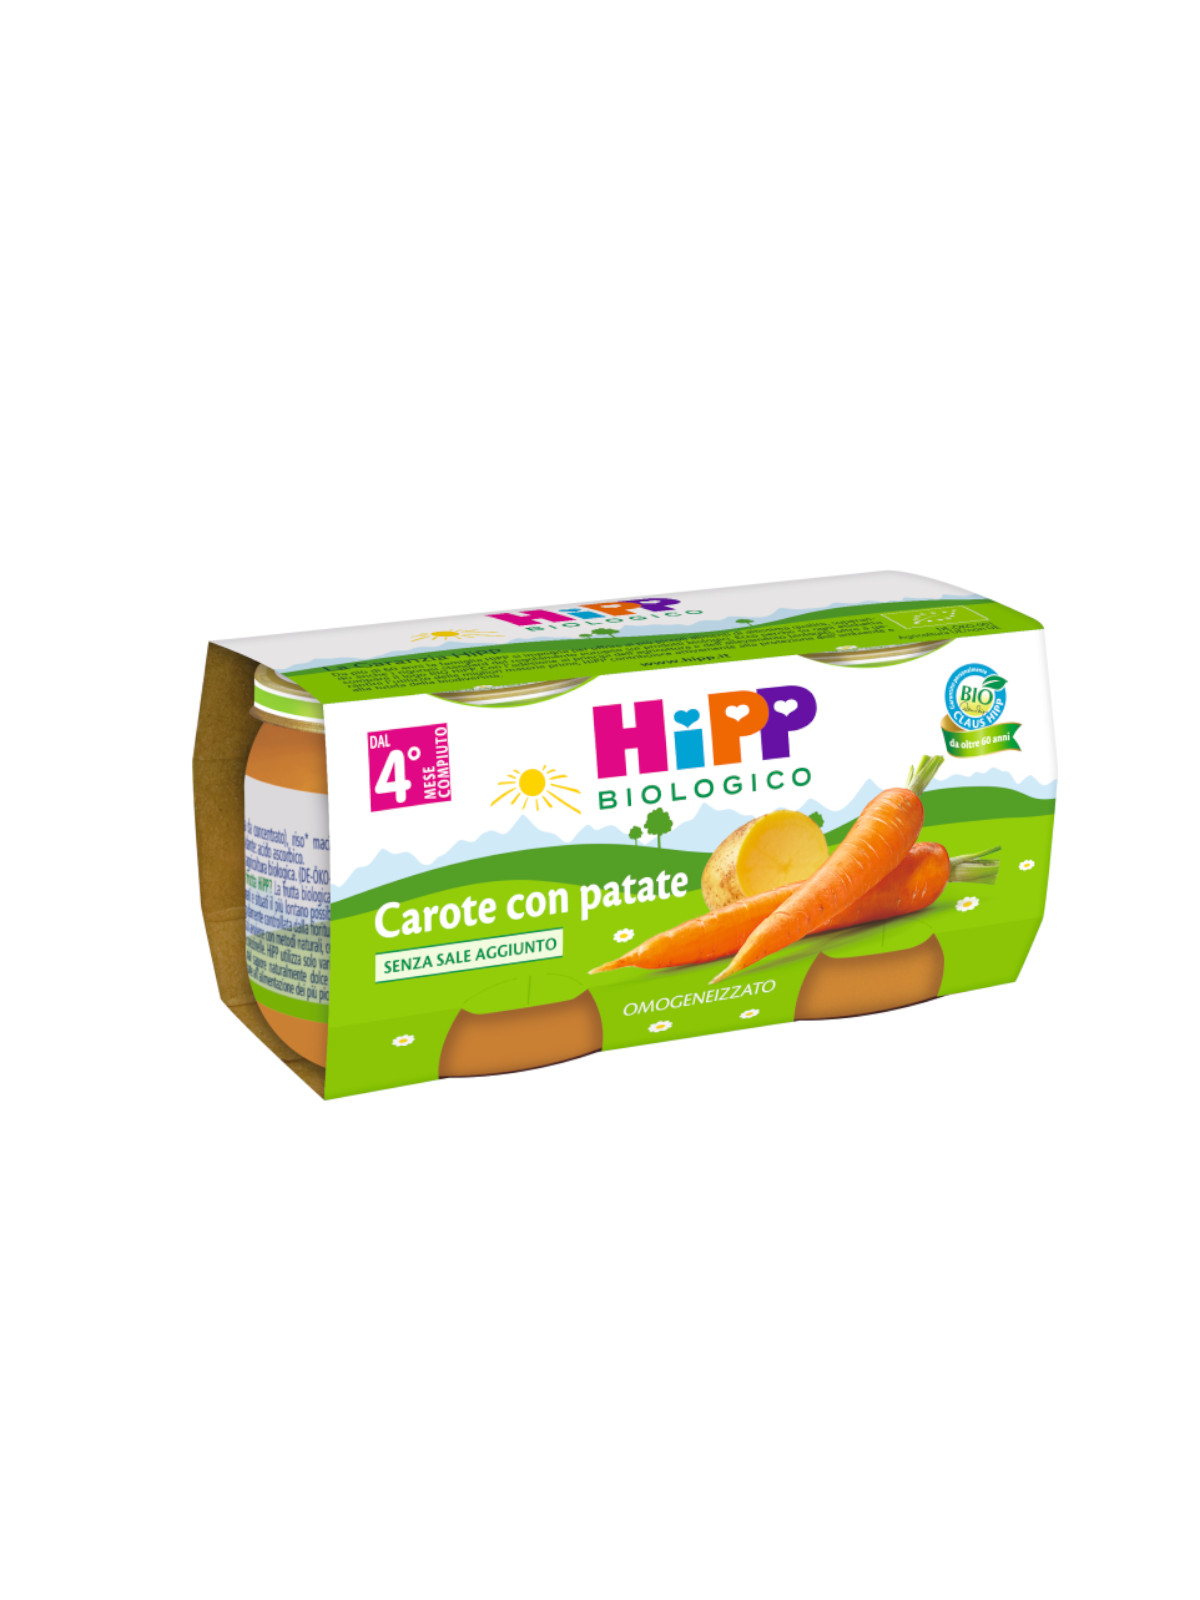 Hipp - omogeneizzato carote con patate 2x80g - Hipp